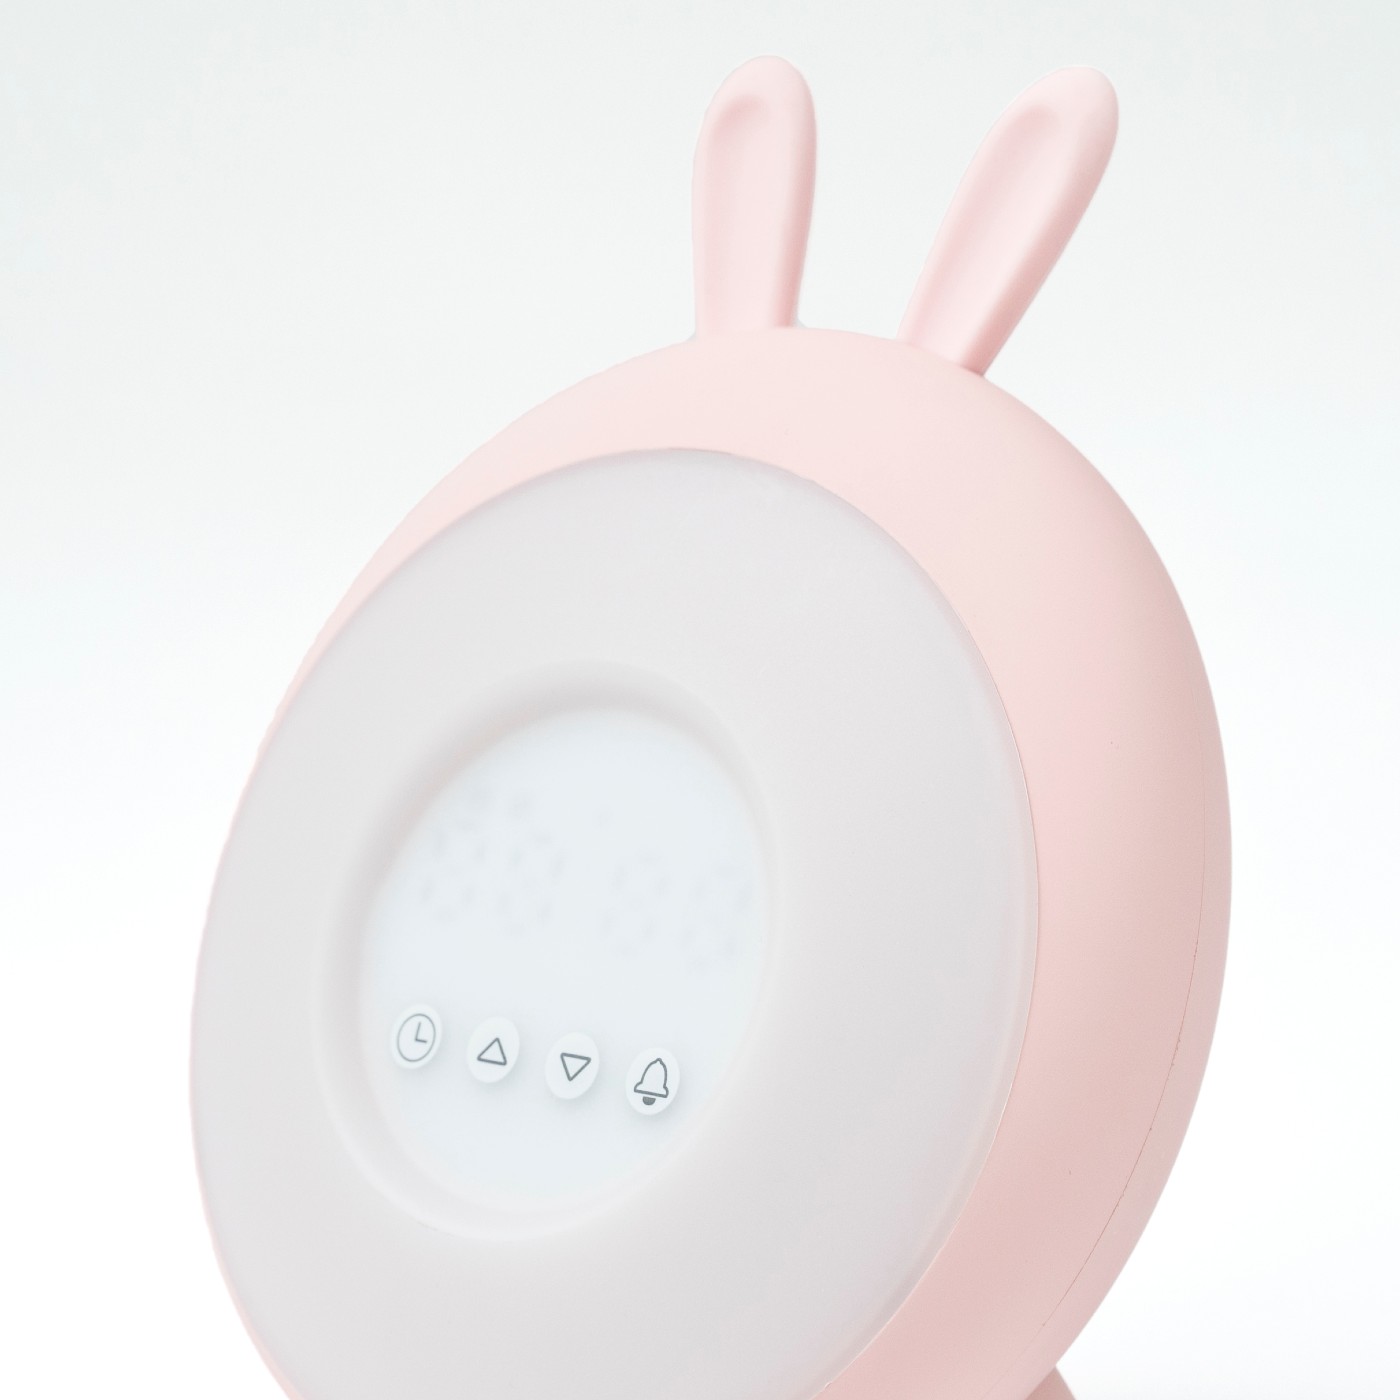 Lampka budząca światłem różowy królik